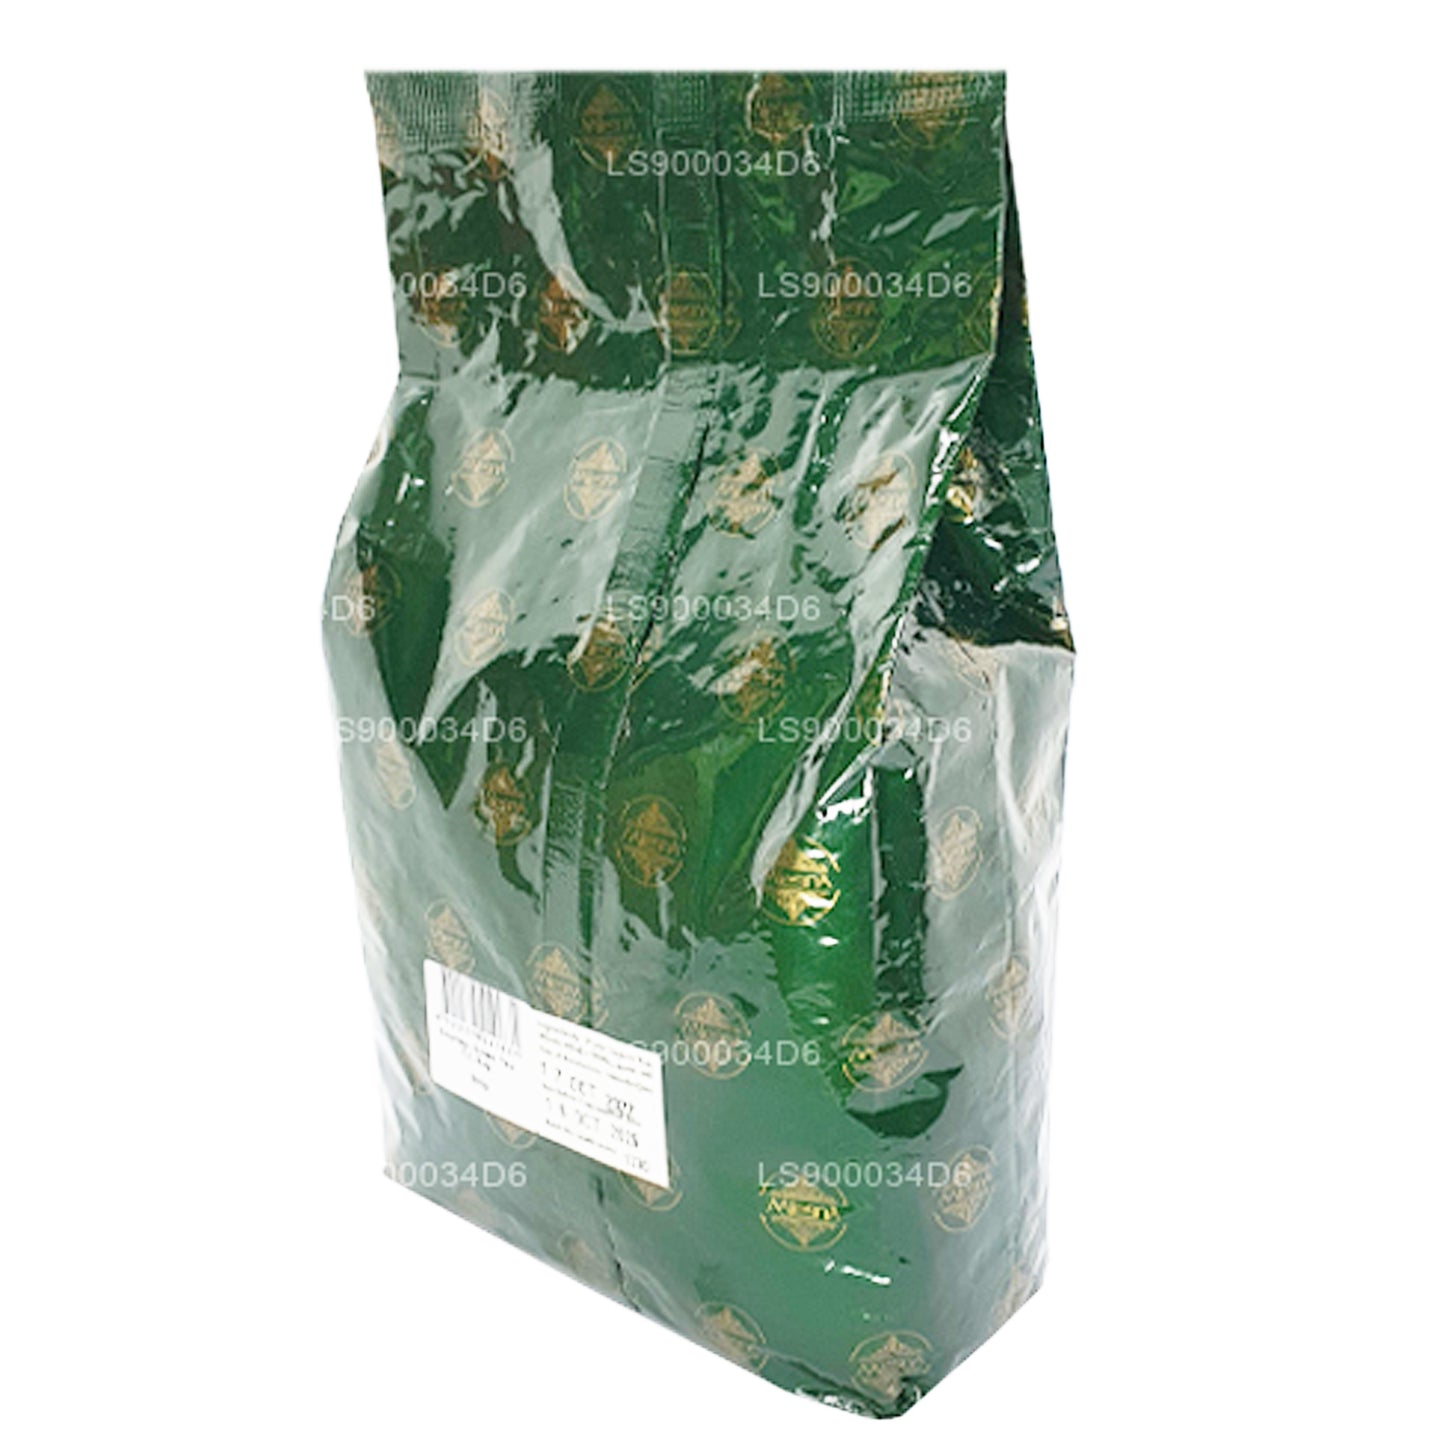 Mlesna naturlig aromatiseret soursop Ceylon grøn te (500 g)